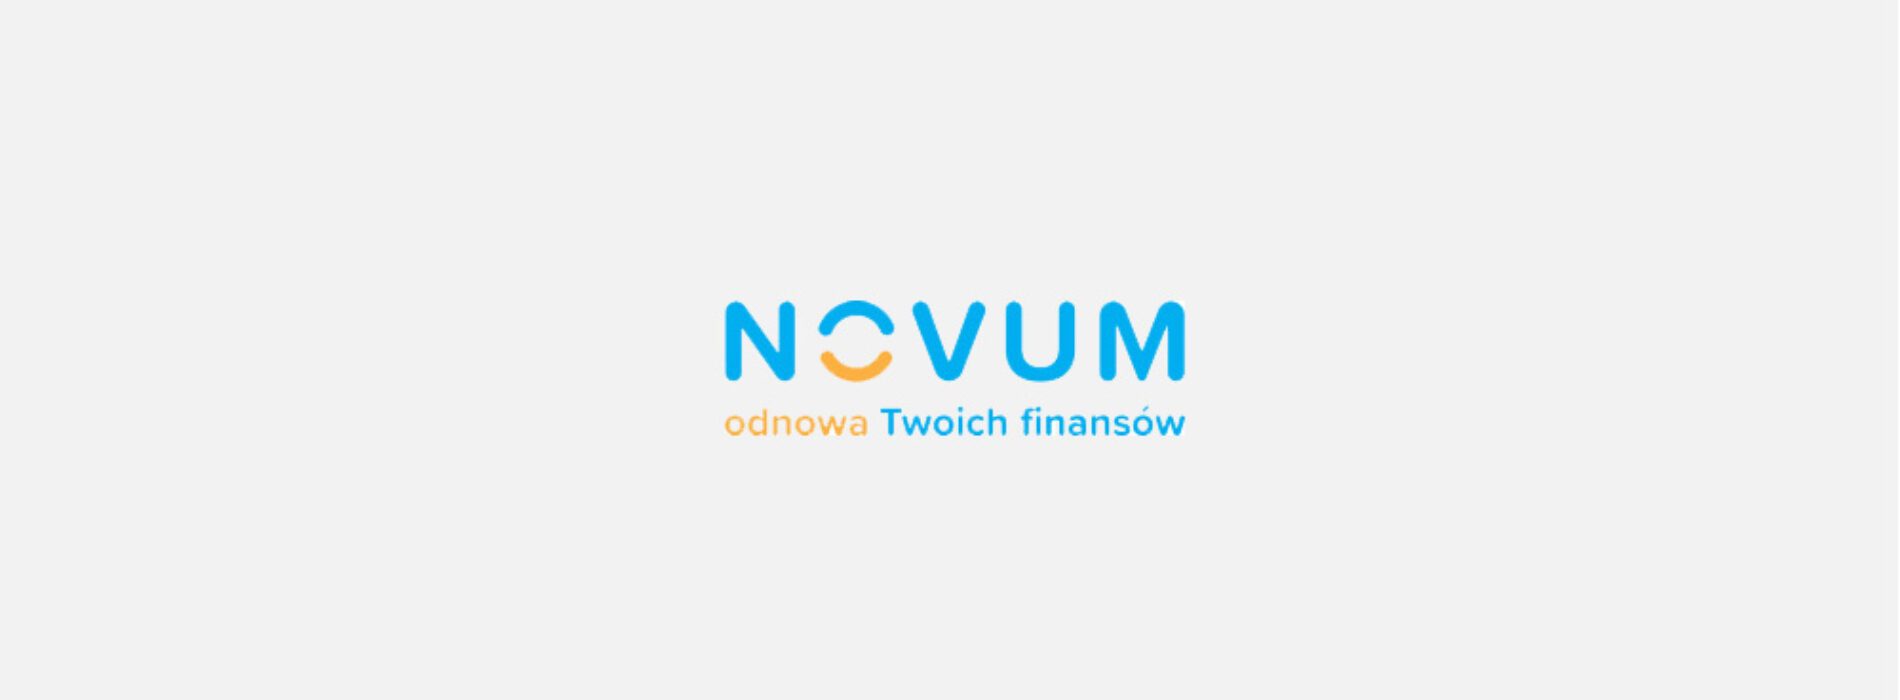 Novum Finance — sprawdziliśmy ofertę i opinie klientów